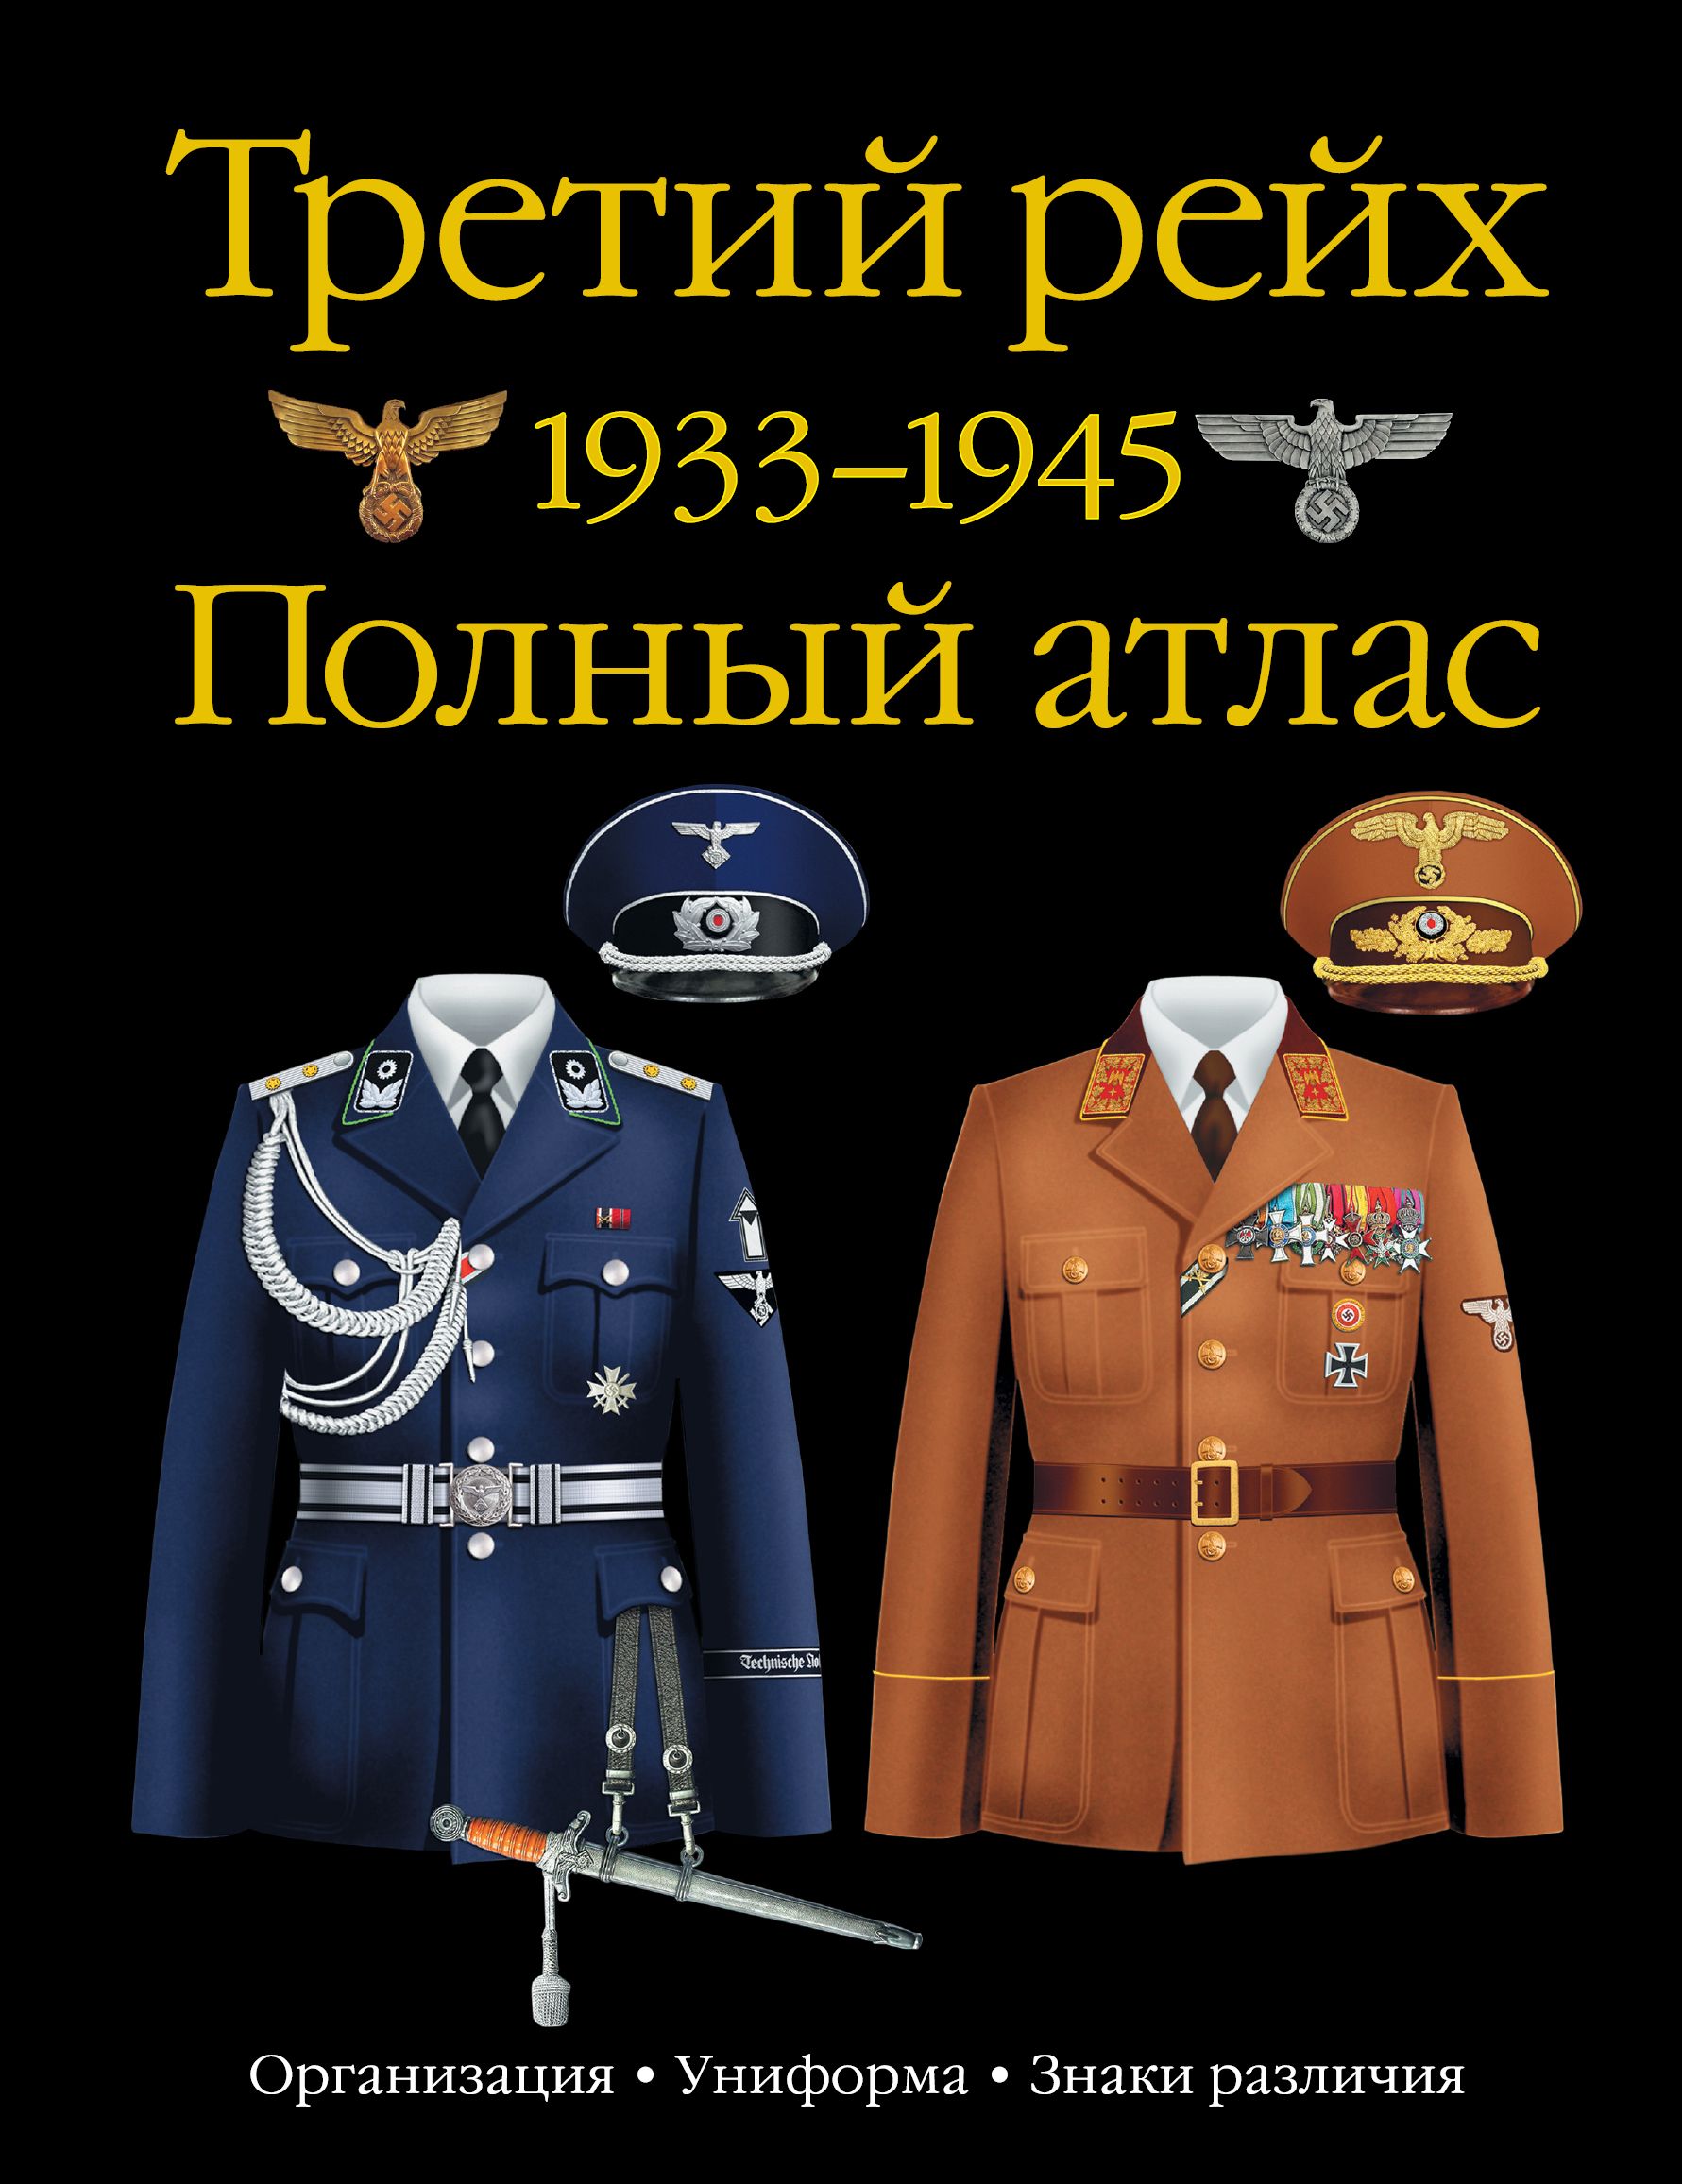 Купить книгу третий рейх. Униформа третьего рейха 1933-1945. Полный атлас униформы третьего рейха.